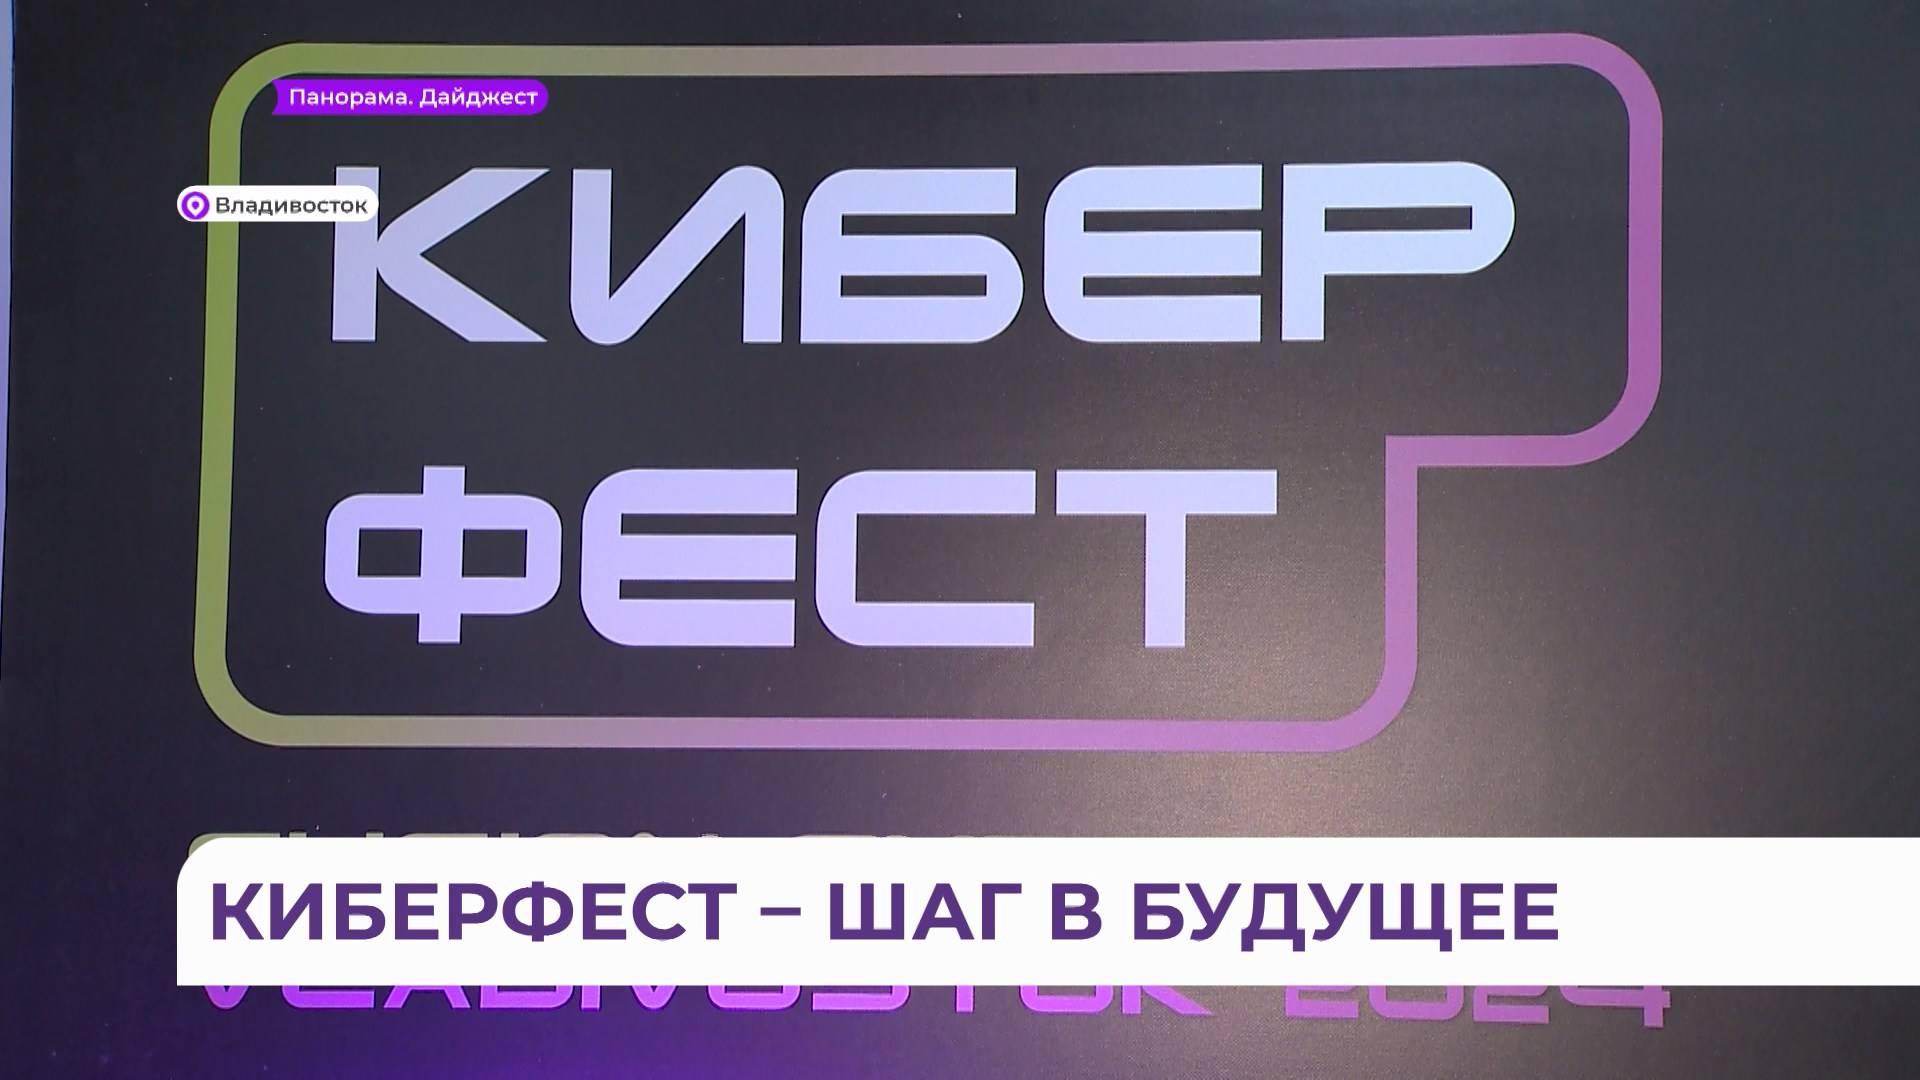 Масштабный фестиваль киберспорта продолжается во Владивостоке